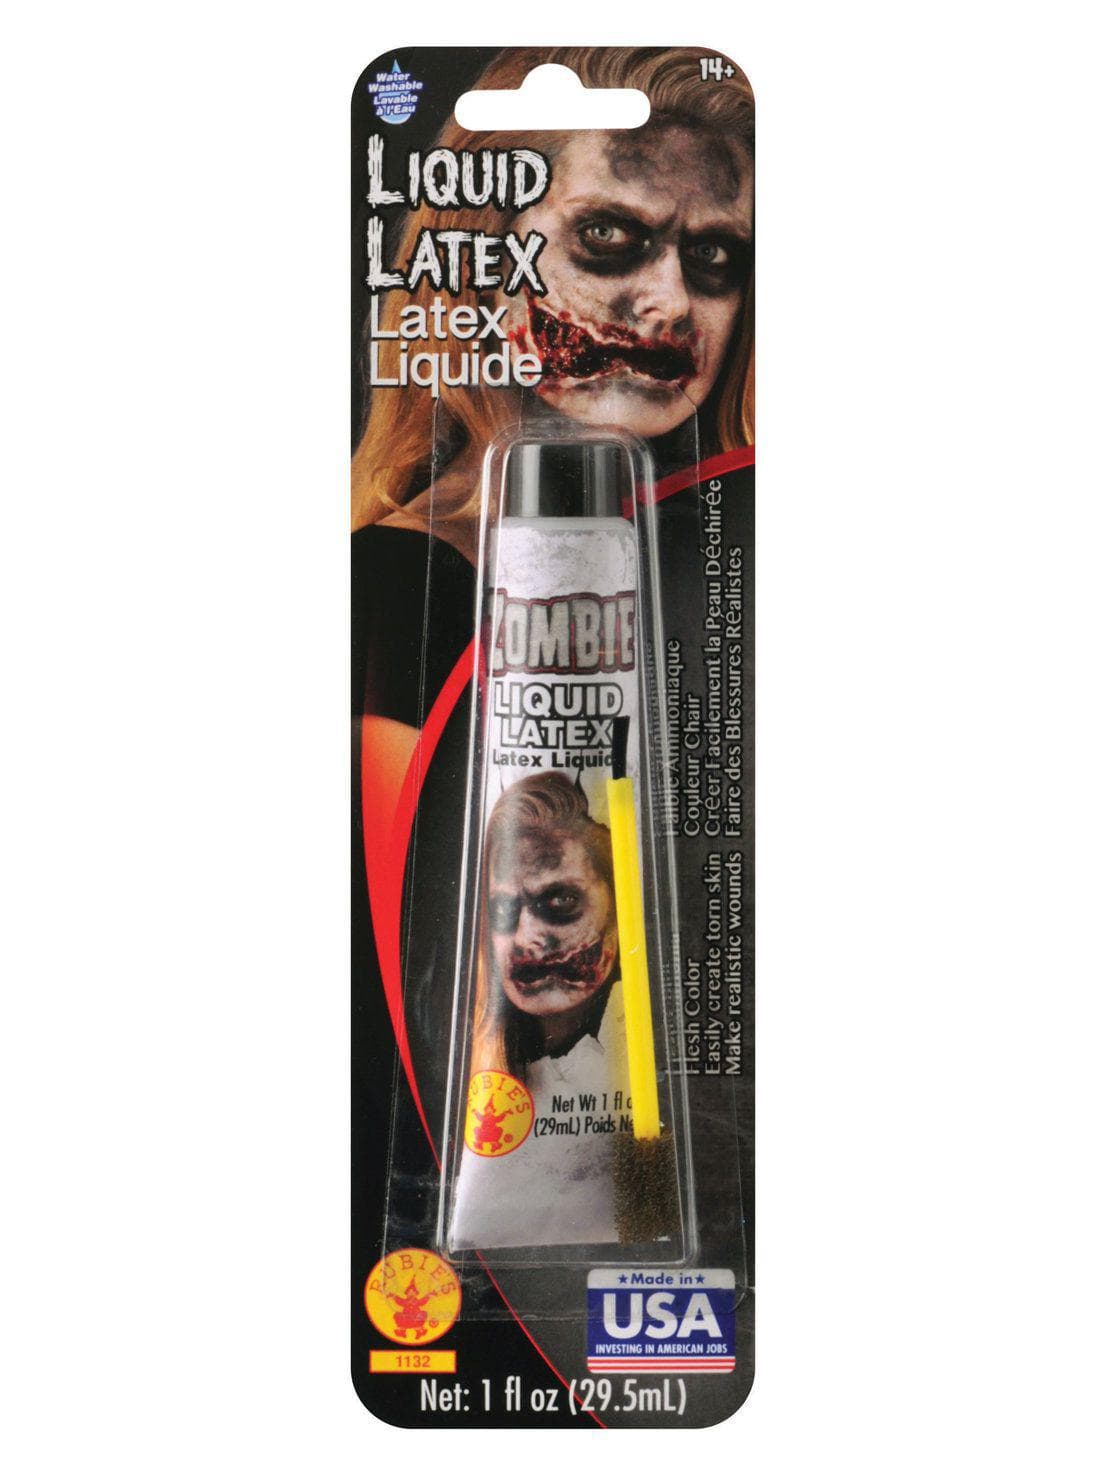 Zombie Liquid Latex - costumes.com